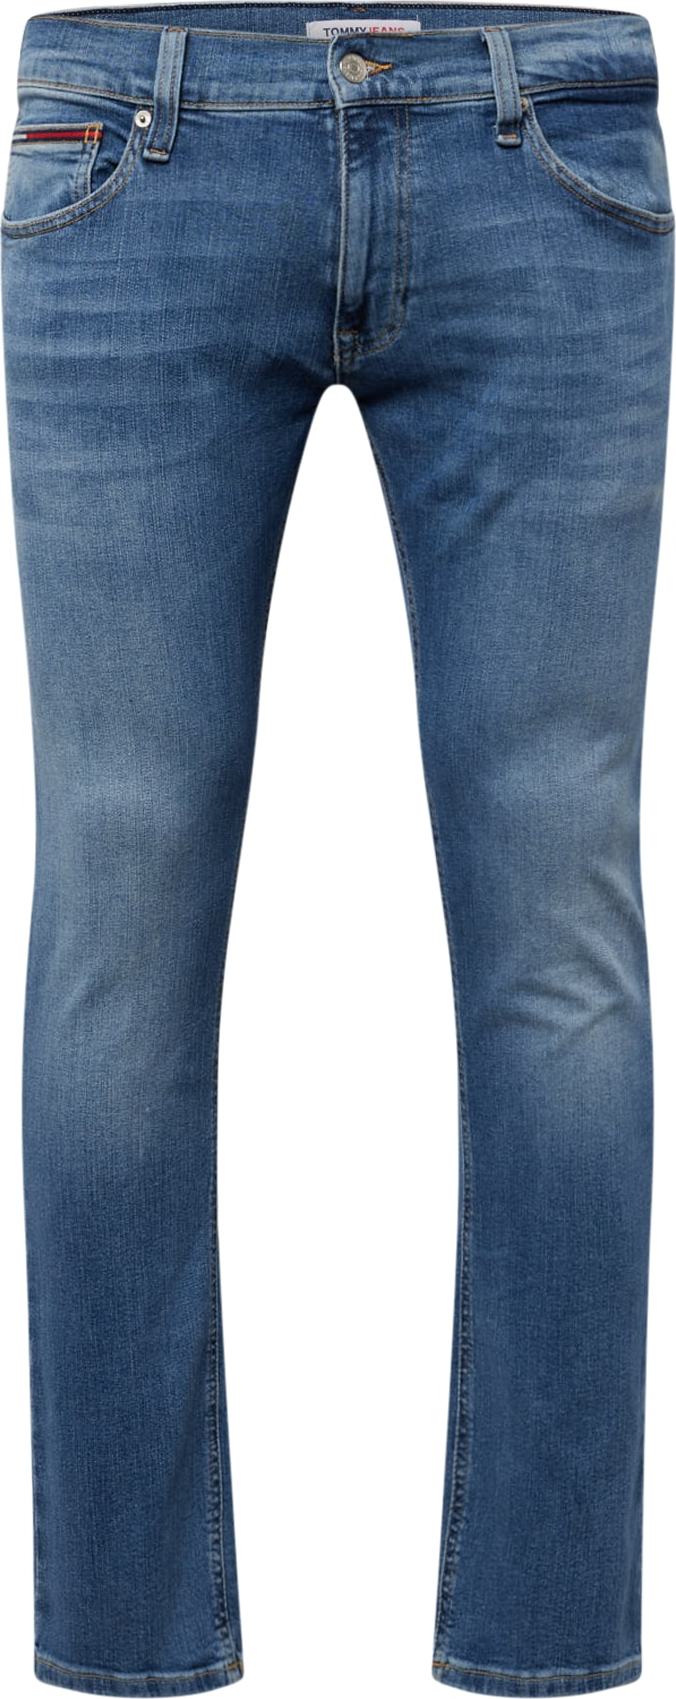 Džíny 'SCANTON' Tommy Jeans modrá džínovina